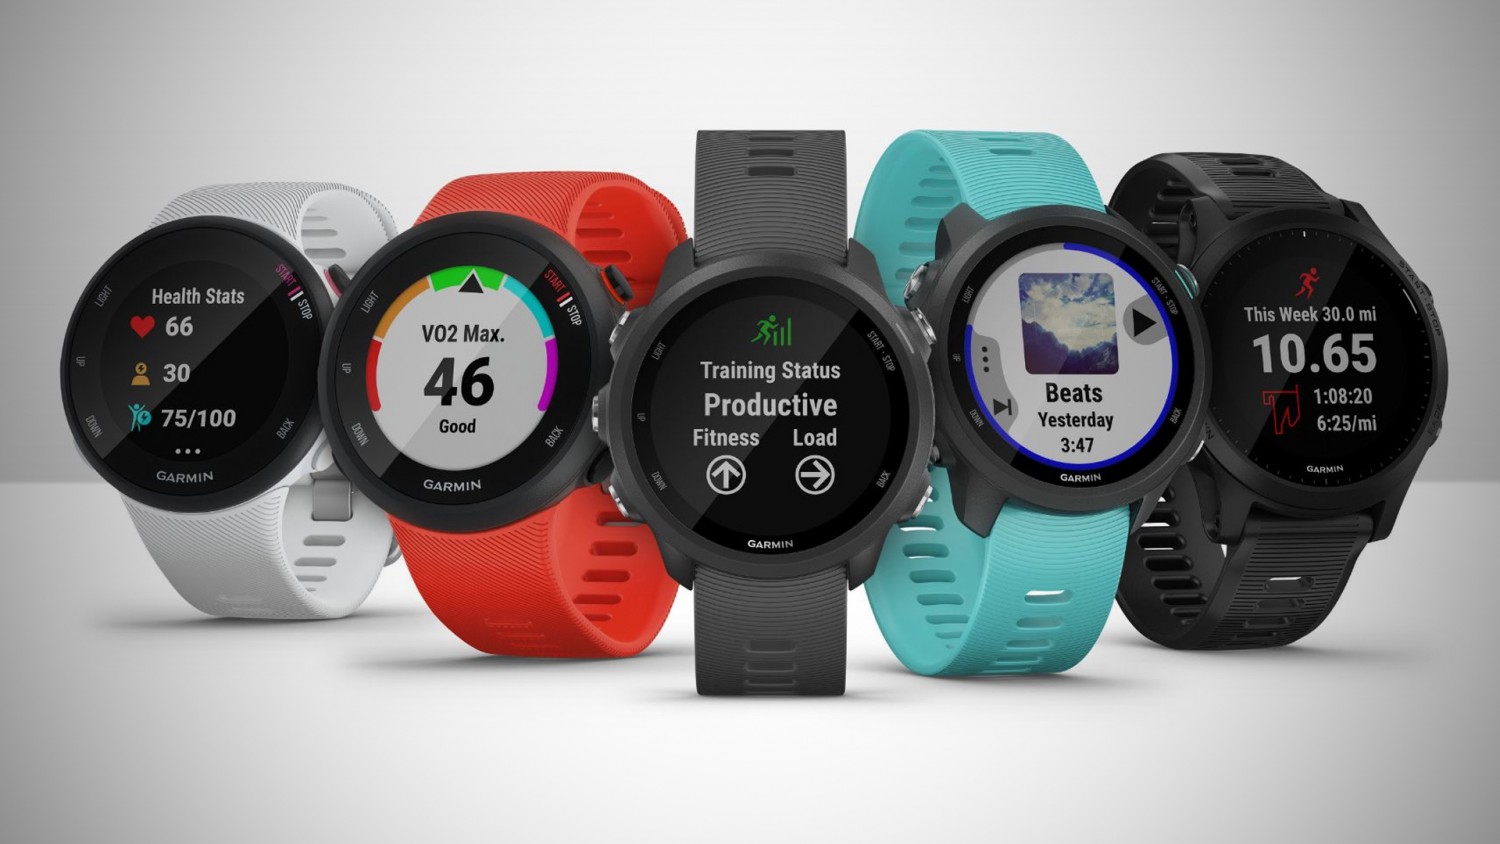 Garmin представила умные часы серии Forerunner для бега